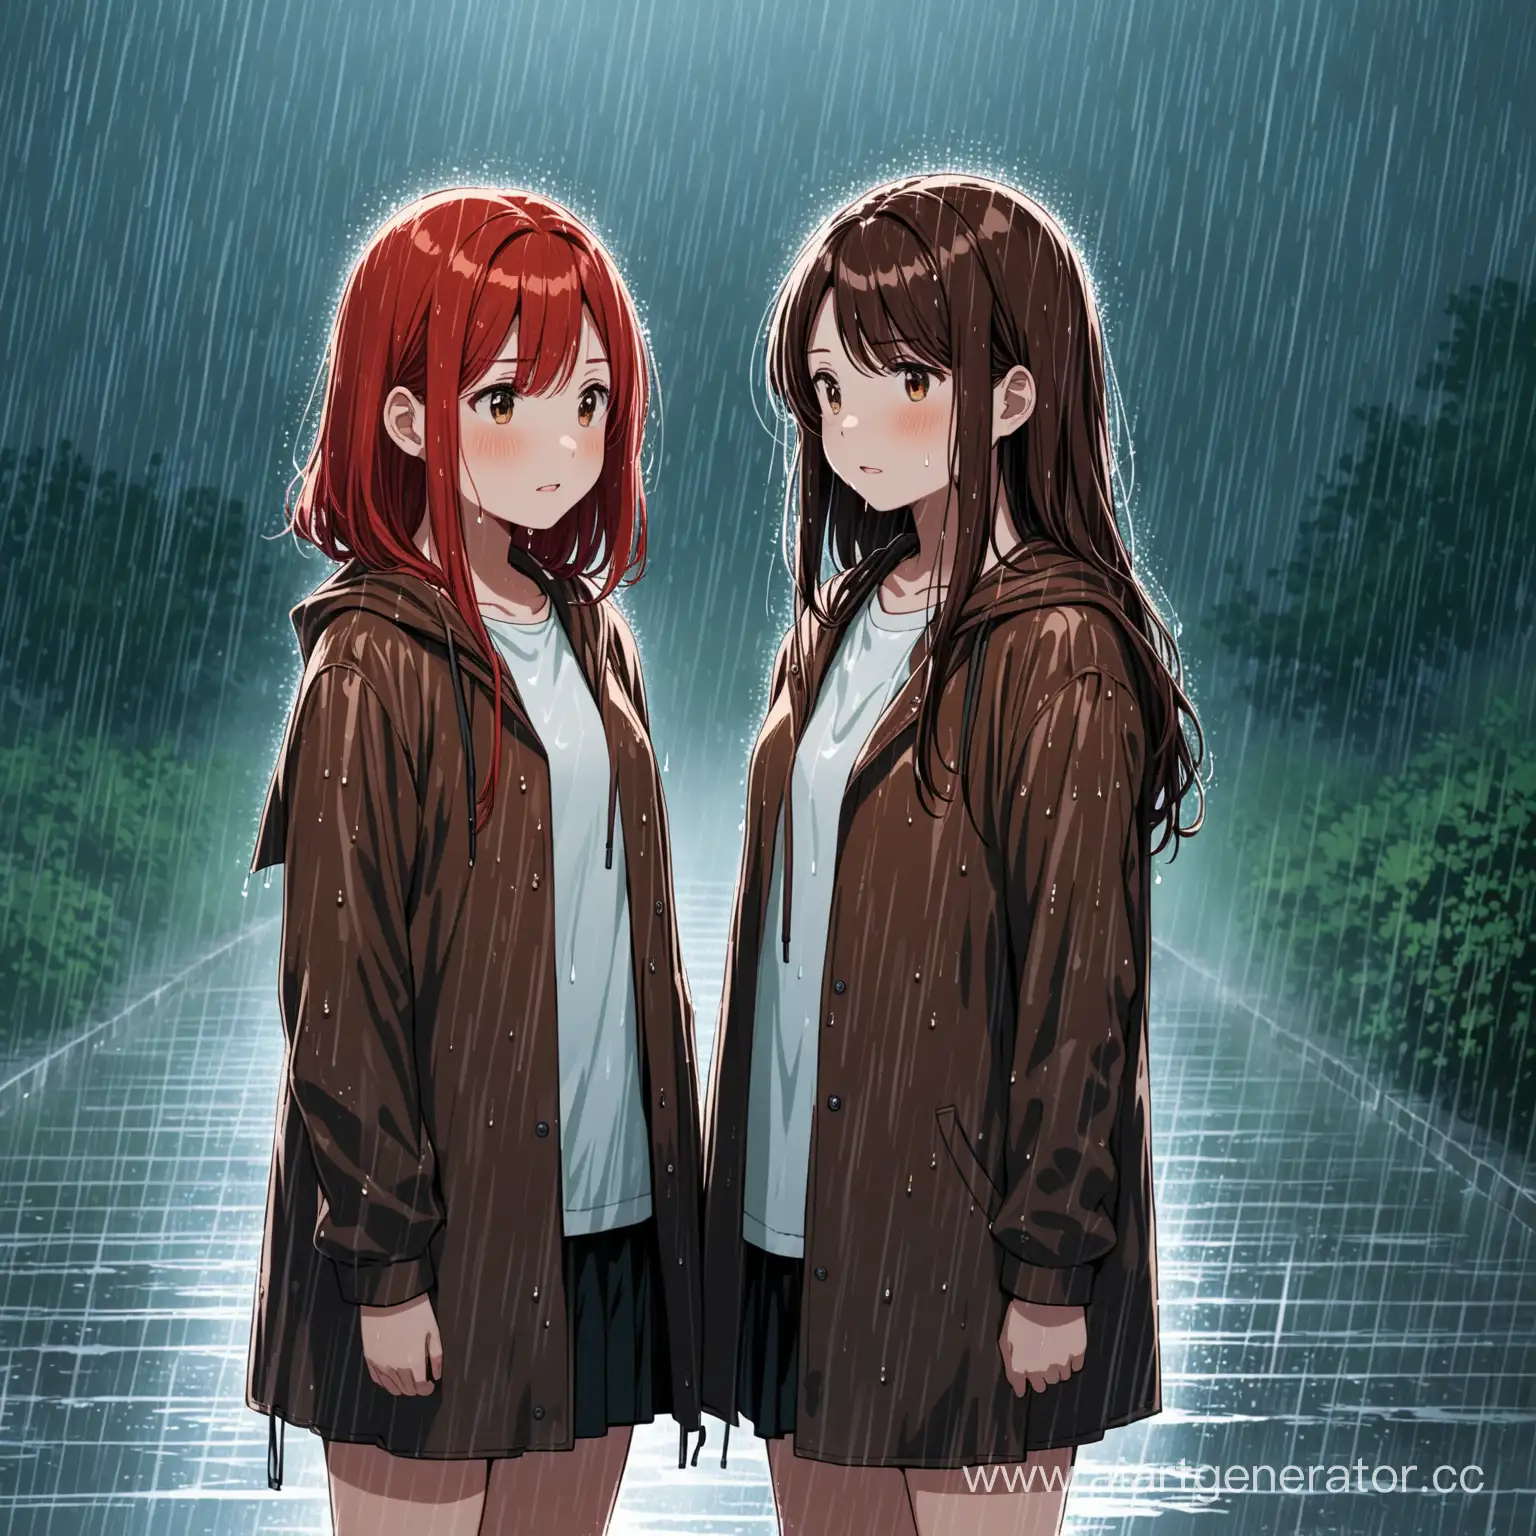 Две девушки стоят под дождем. У одной короткие красные волосы, а у другой русые длинные